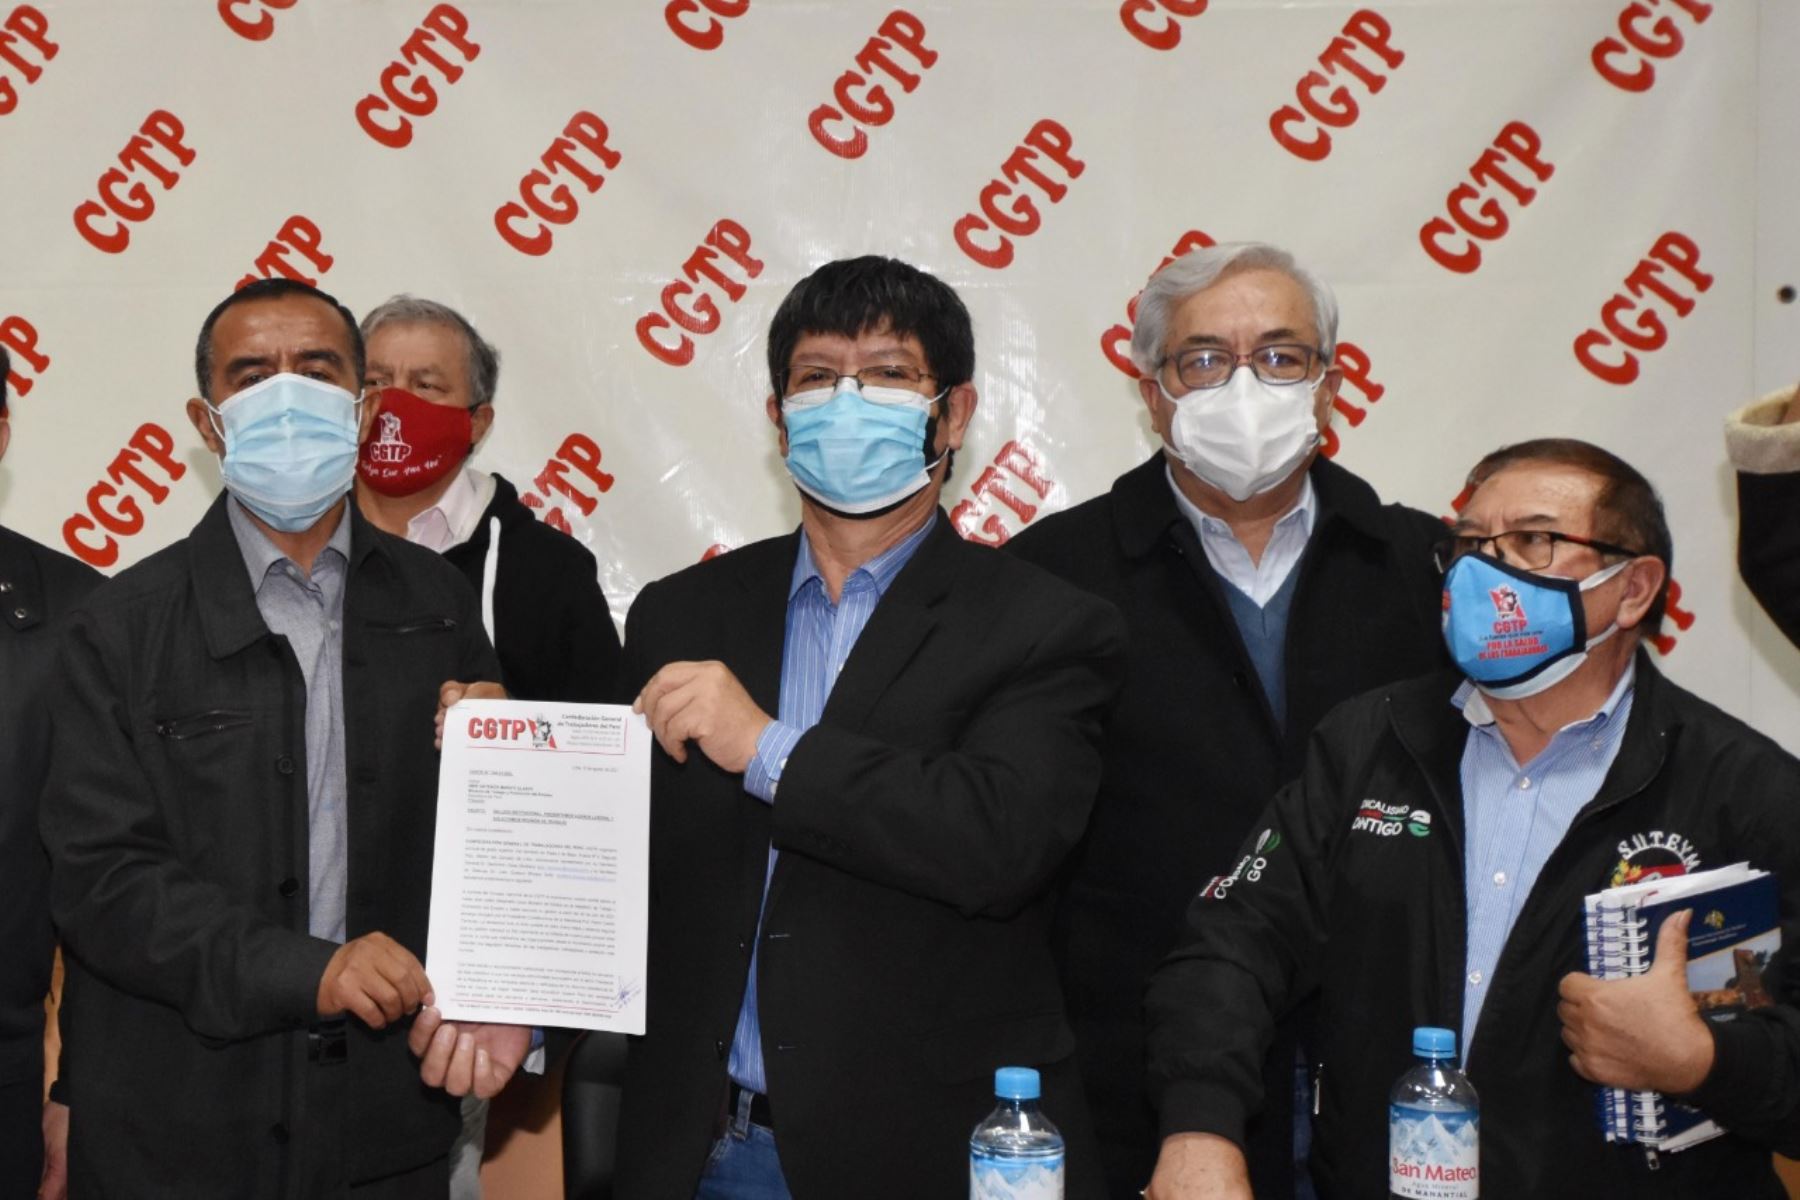 Los integrantes de la CGTP presentaron su agenda laboral al Ministerio de Trabajo.